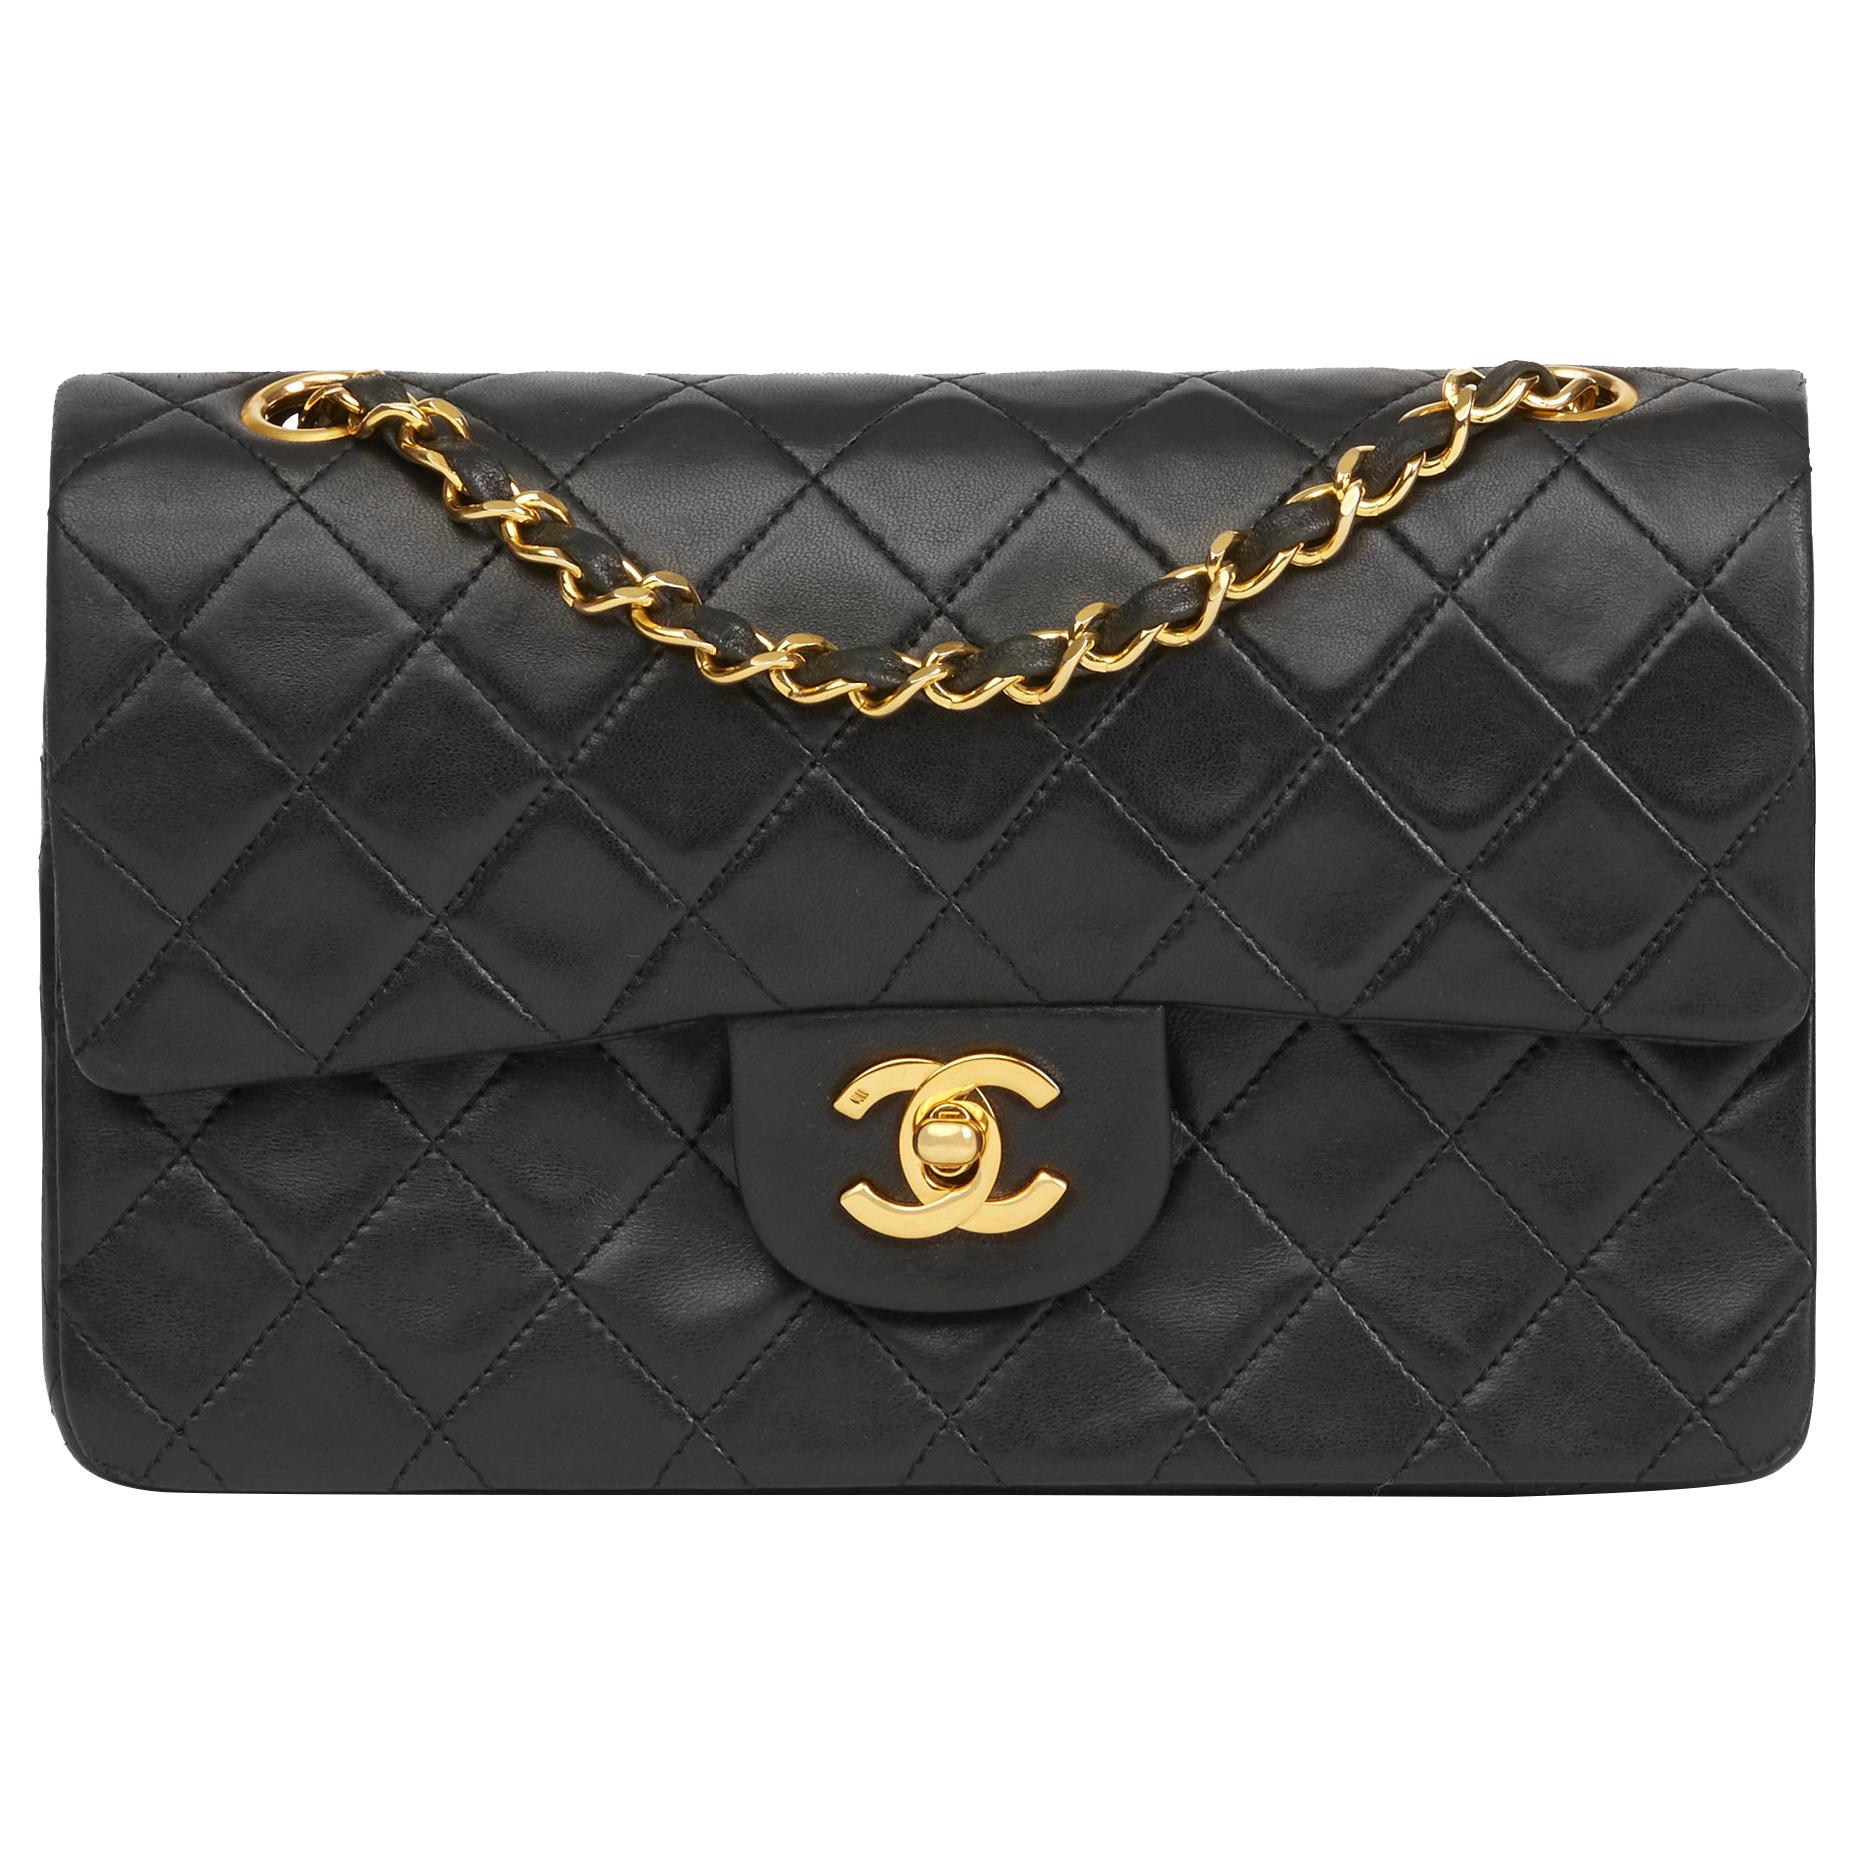 Chanel 80s Black Vintage Shoulder Bag - Vintage Lux